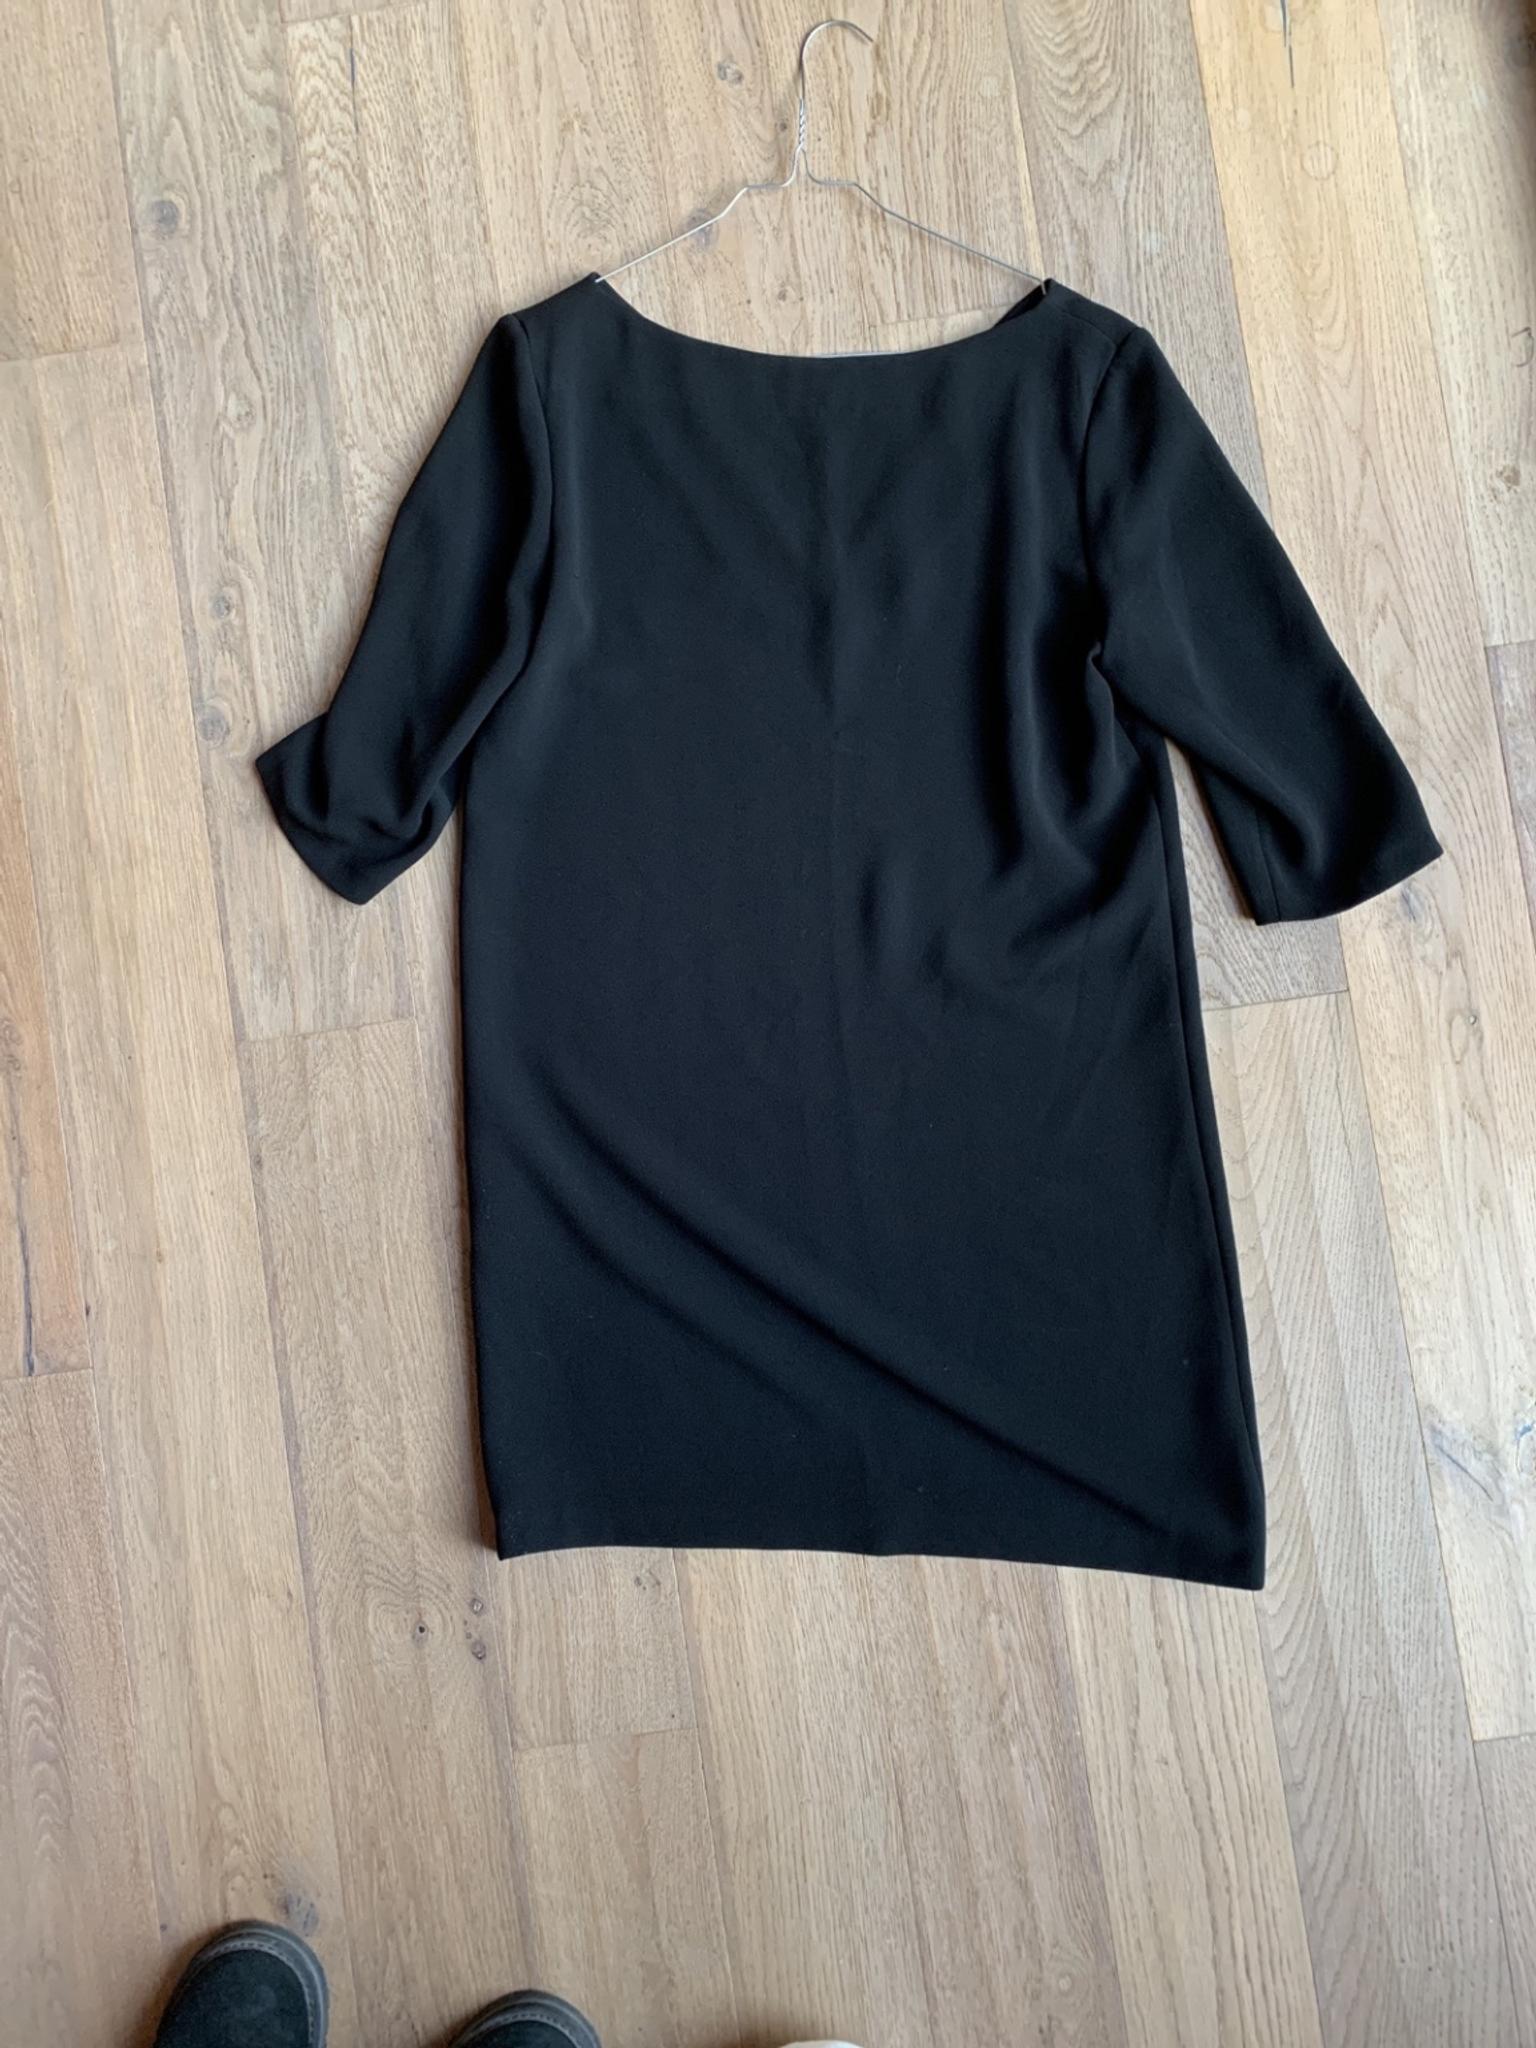 Schwarzes Kleid Von Prego In 40477 Dusseldorf Fur 18 00 Zum Verkauf Shpock At